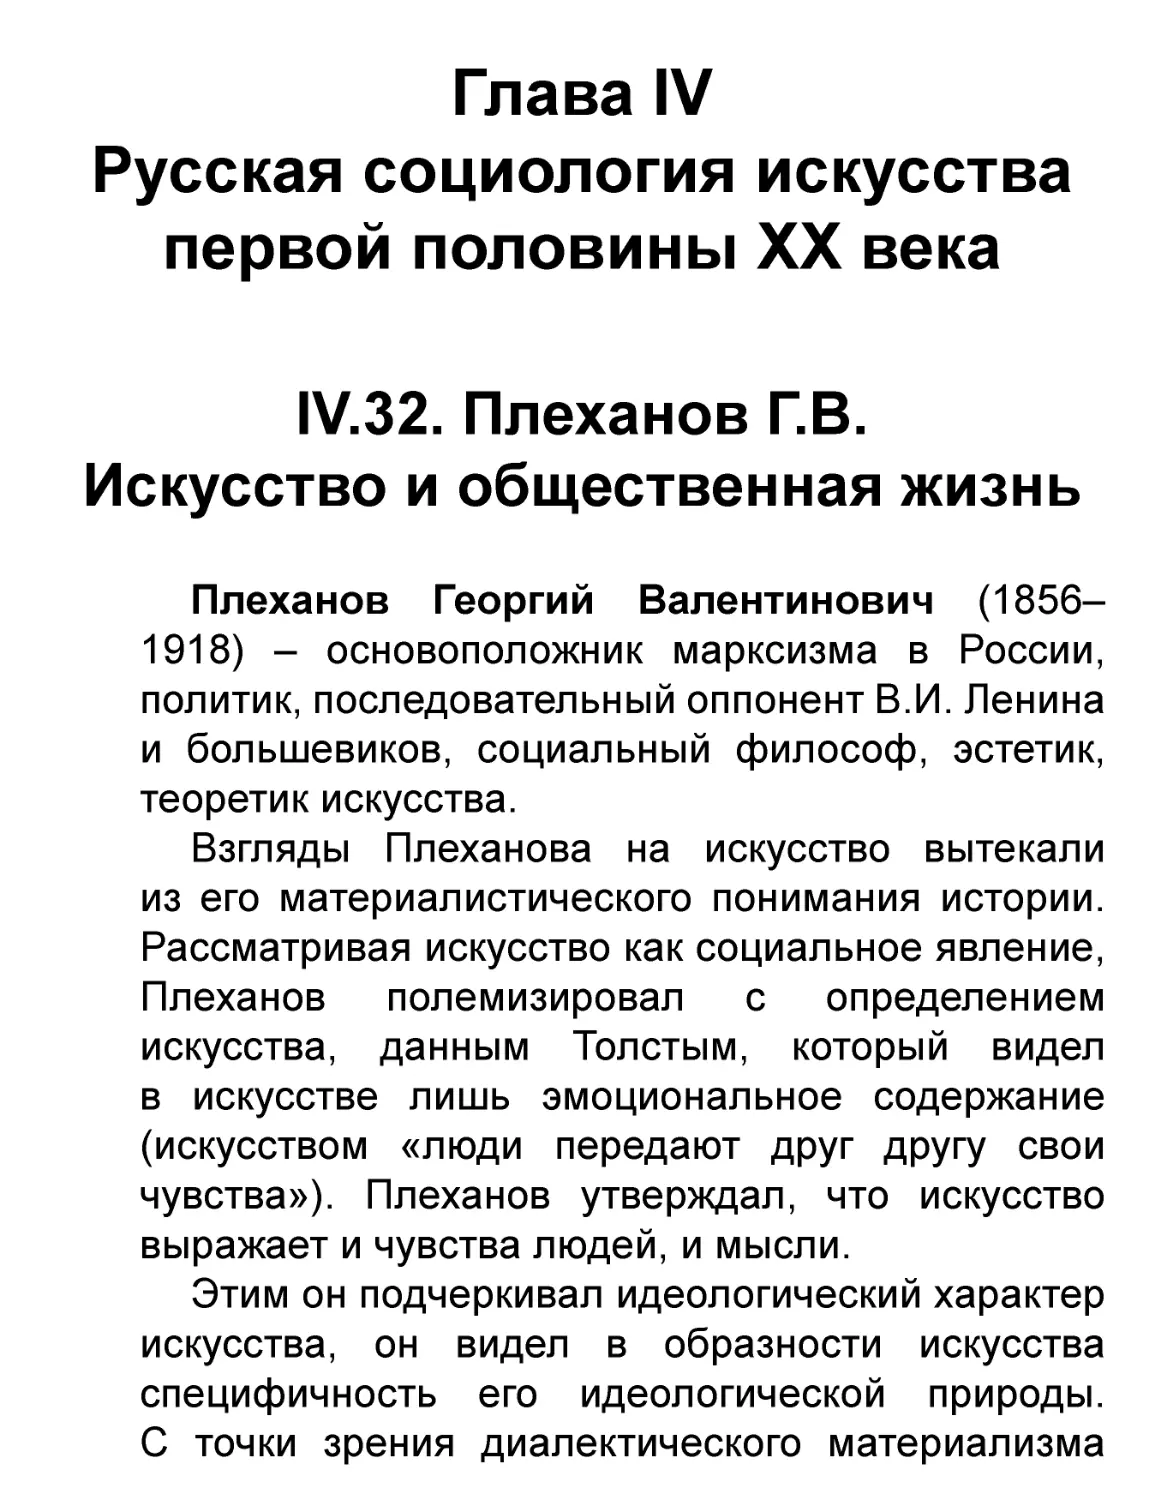 Глава IV
IV.32. Плеханов Г.В.